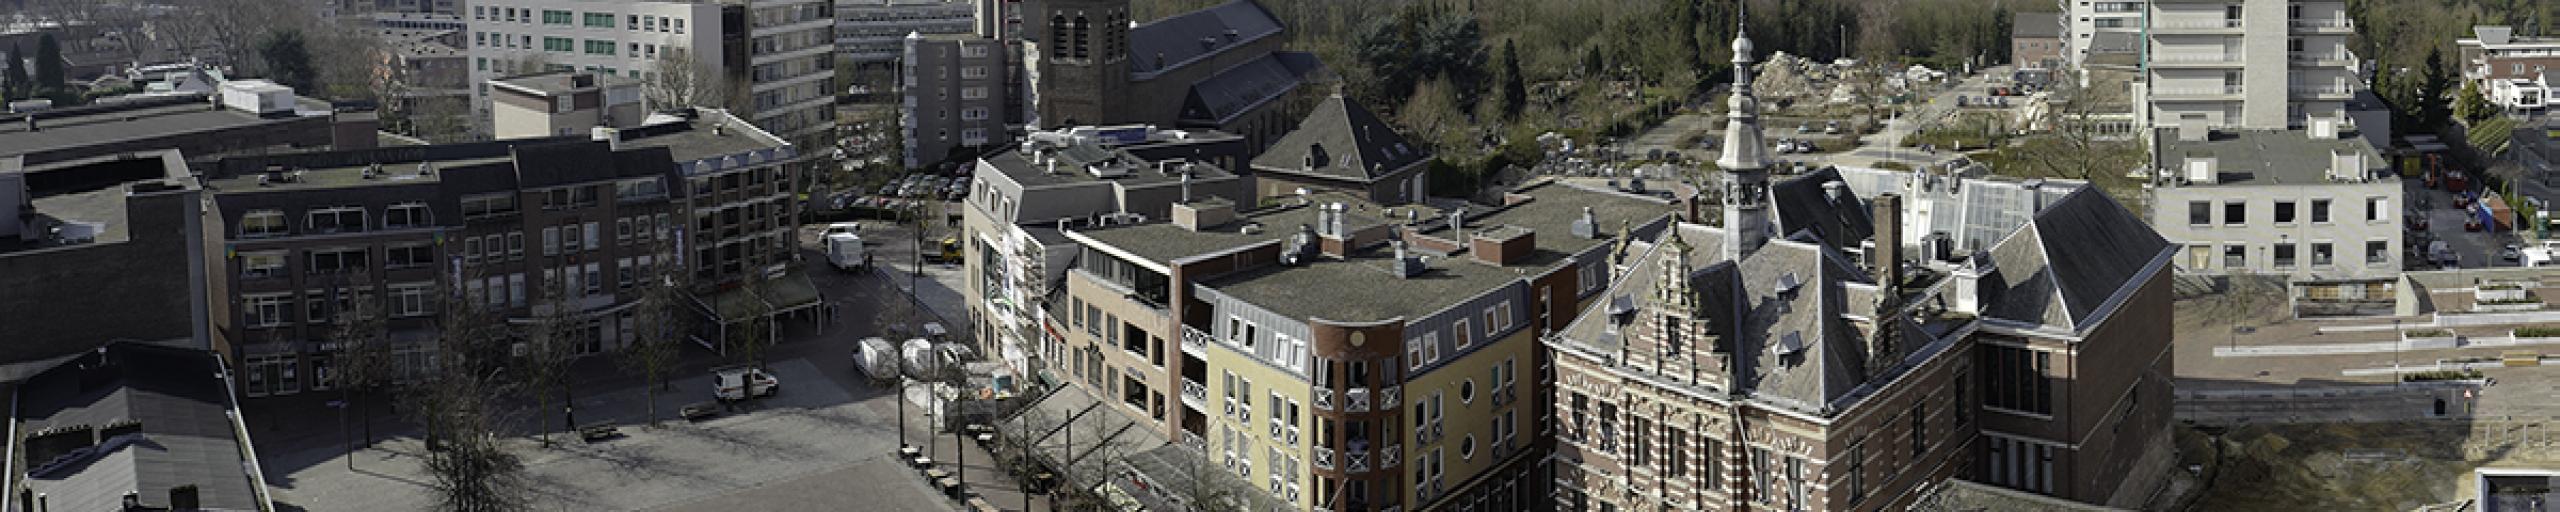 Luchtfoto van het centrum van Kerkrade. Op de foto is onder andere het Raadhuis te zien.